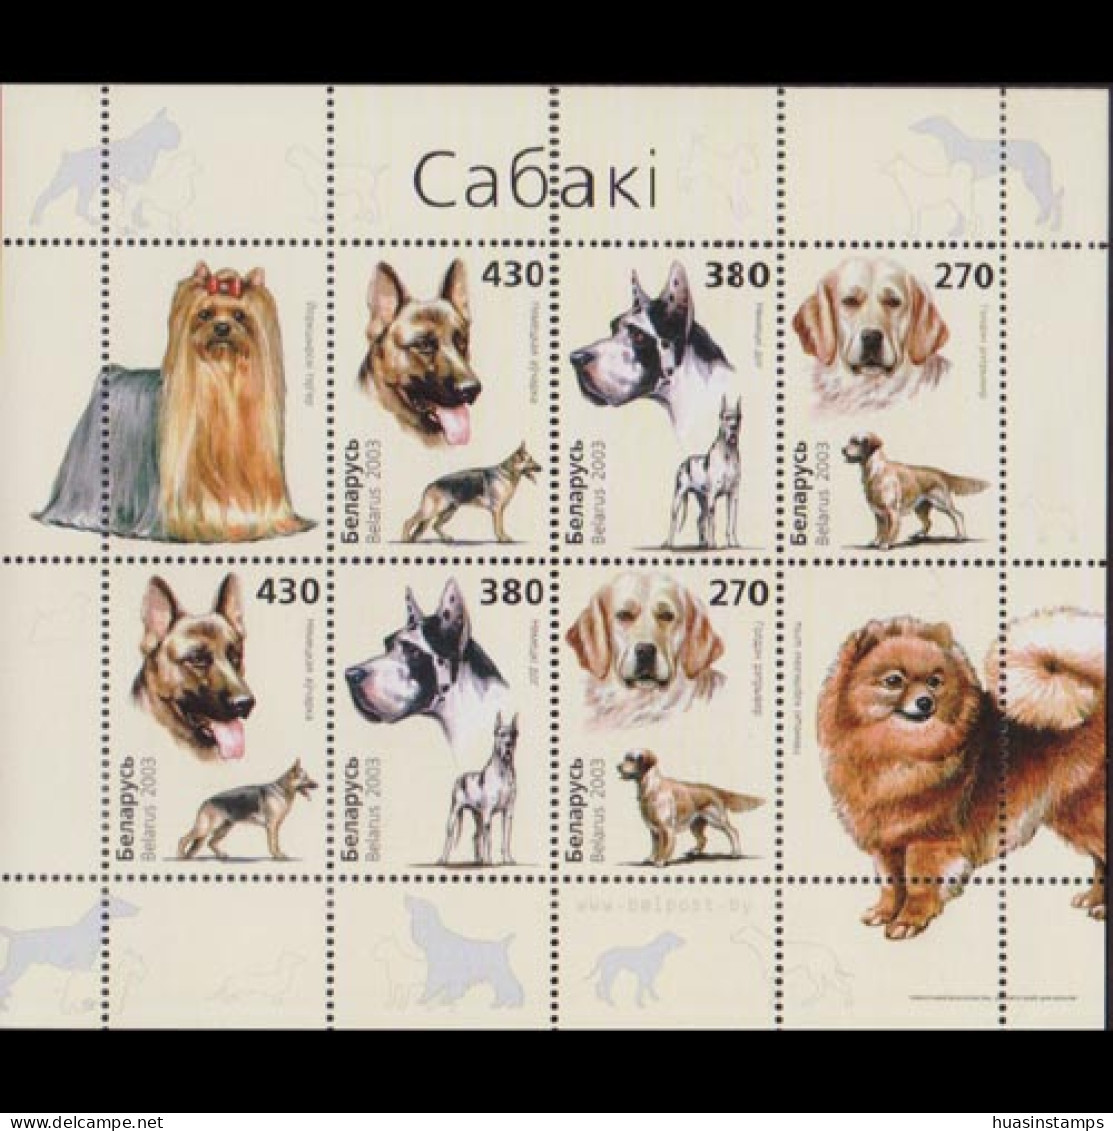 BELARUS 2003 - Scott# 483a S/S Dogs MNH - Belarus